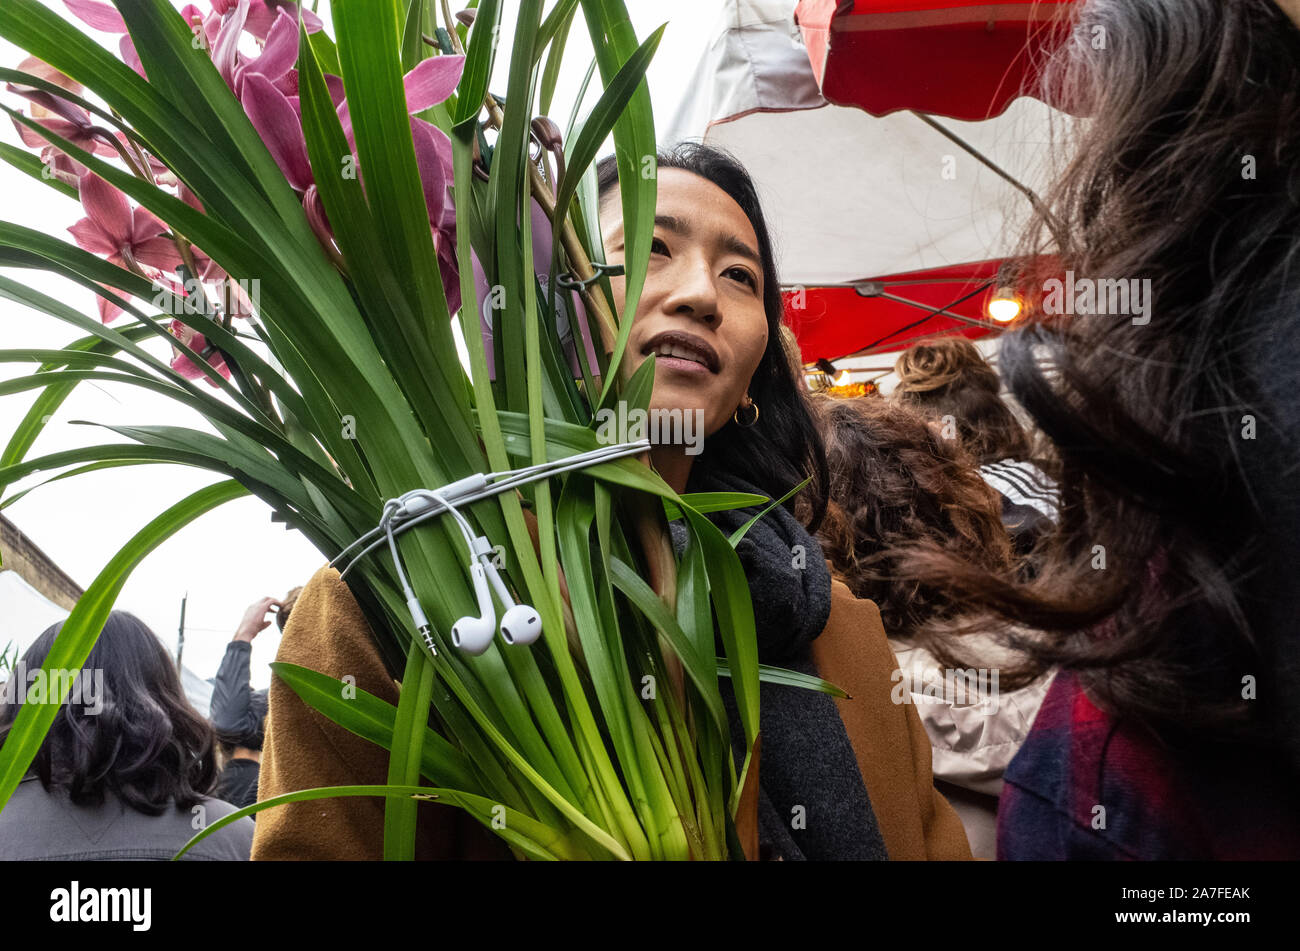 Asiatische Dame können Sie über Ihre Kopfhörer eine Pflanze zu unterstützen, wie sie trägt es durch Columbia Road Blumenmarkt, East London, Großbritannien Stockfoto